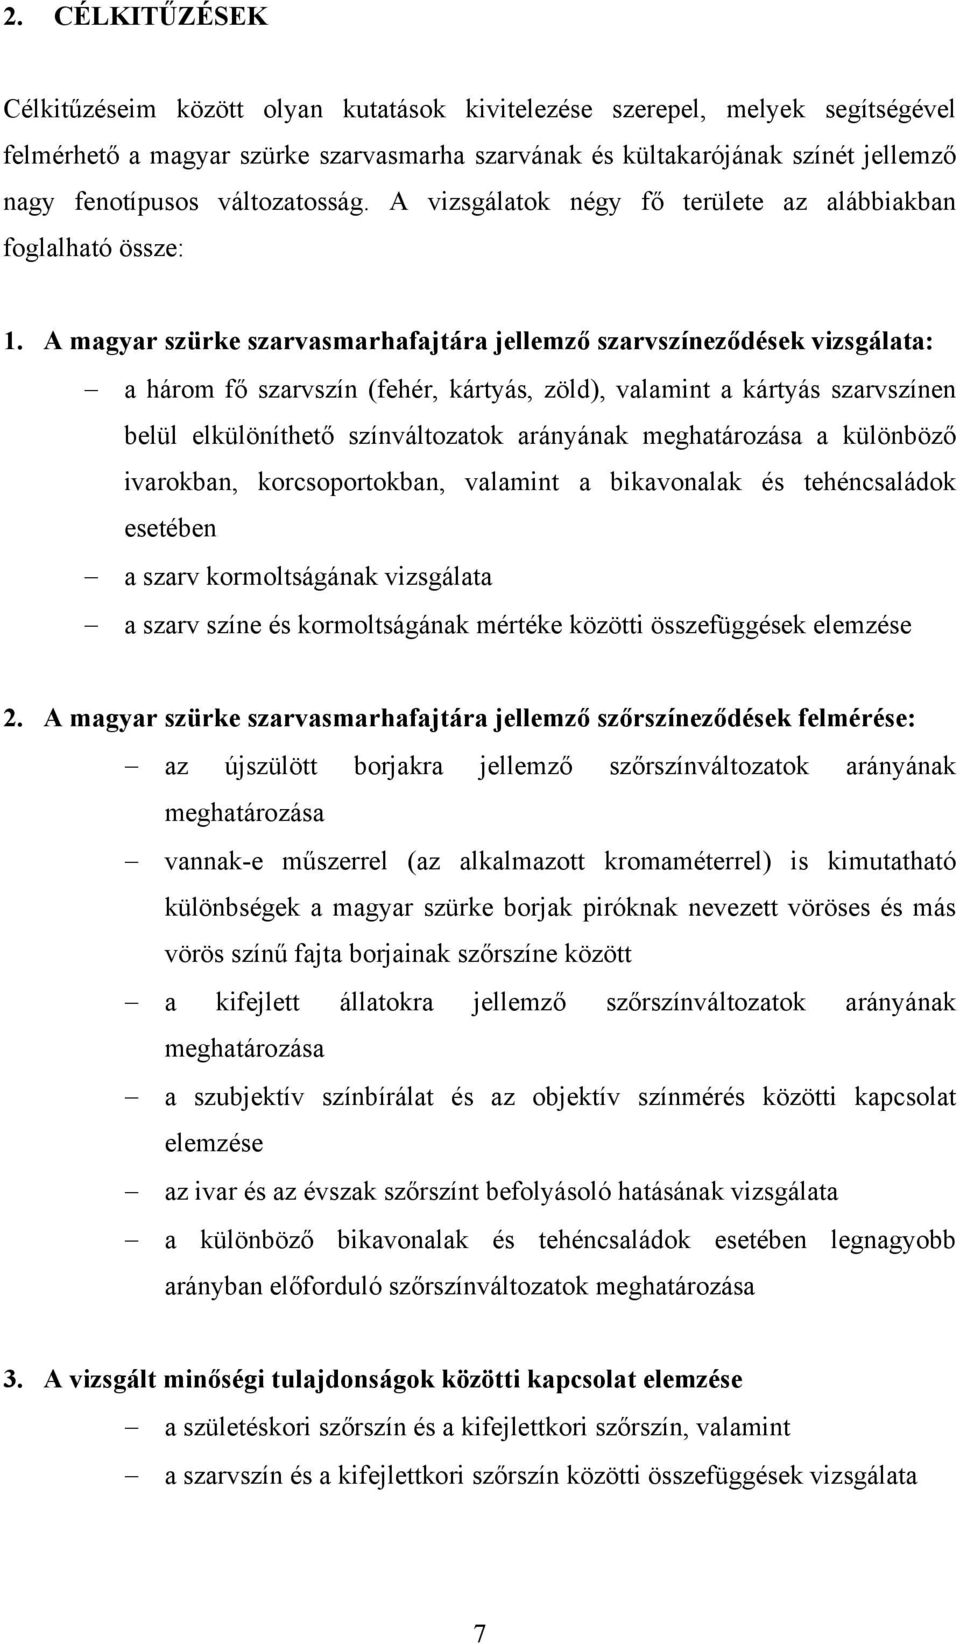 A magyar szürke szarvasmarhafajtára jellemző szarvszíneződések vizsgálata: a három fő szarvszín (fehér, kártyás, zöld), valamint a kártyás szarvszínen belül elkülöníthető színváltozatok arányának